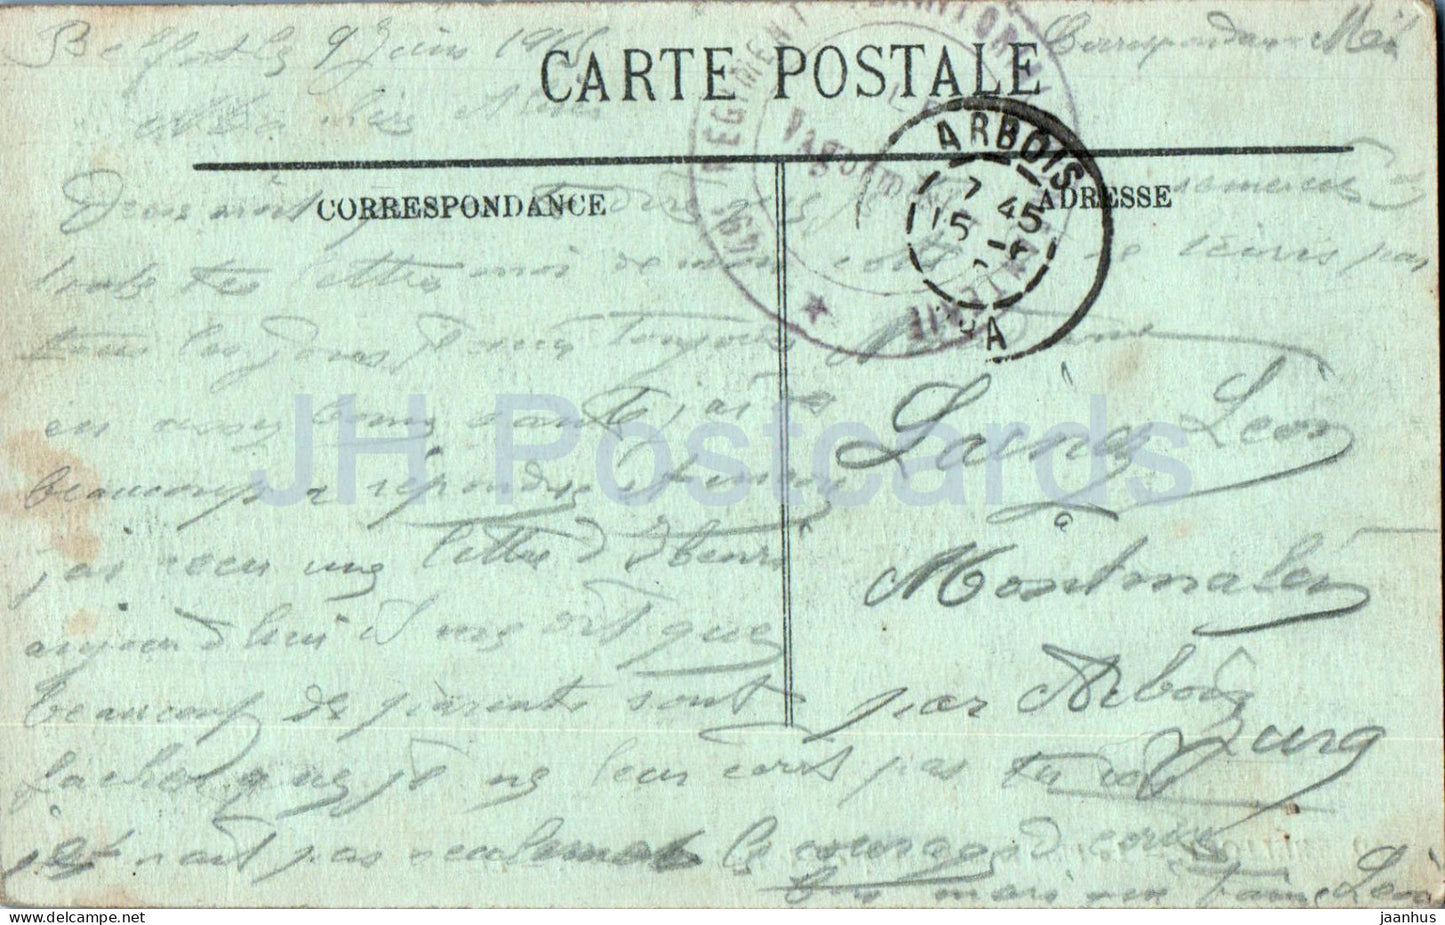 Belfort - La Place de la République et le Boulevard Carnot - courrier militaire - 69 - 1915 - carte postale ancienne - France - oblitéré 